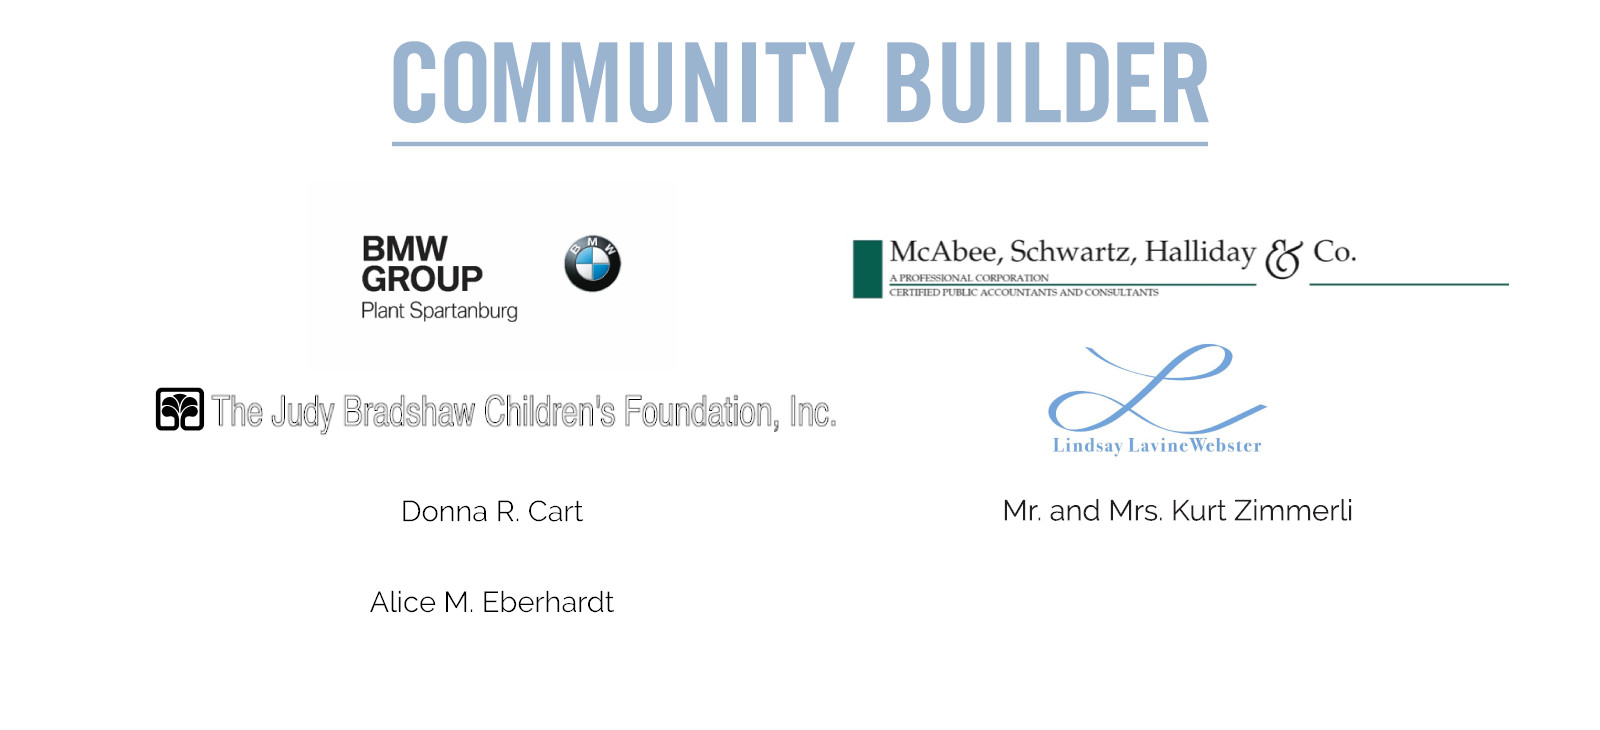 Community Builder Sponsorship